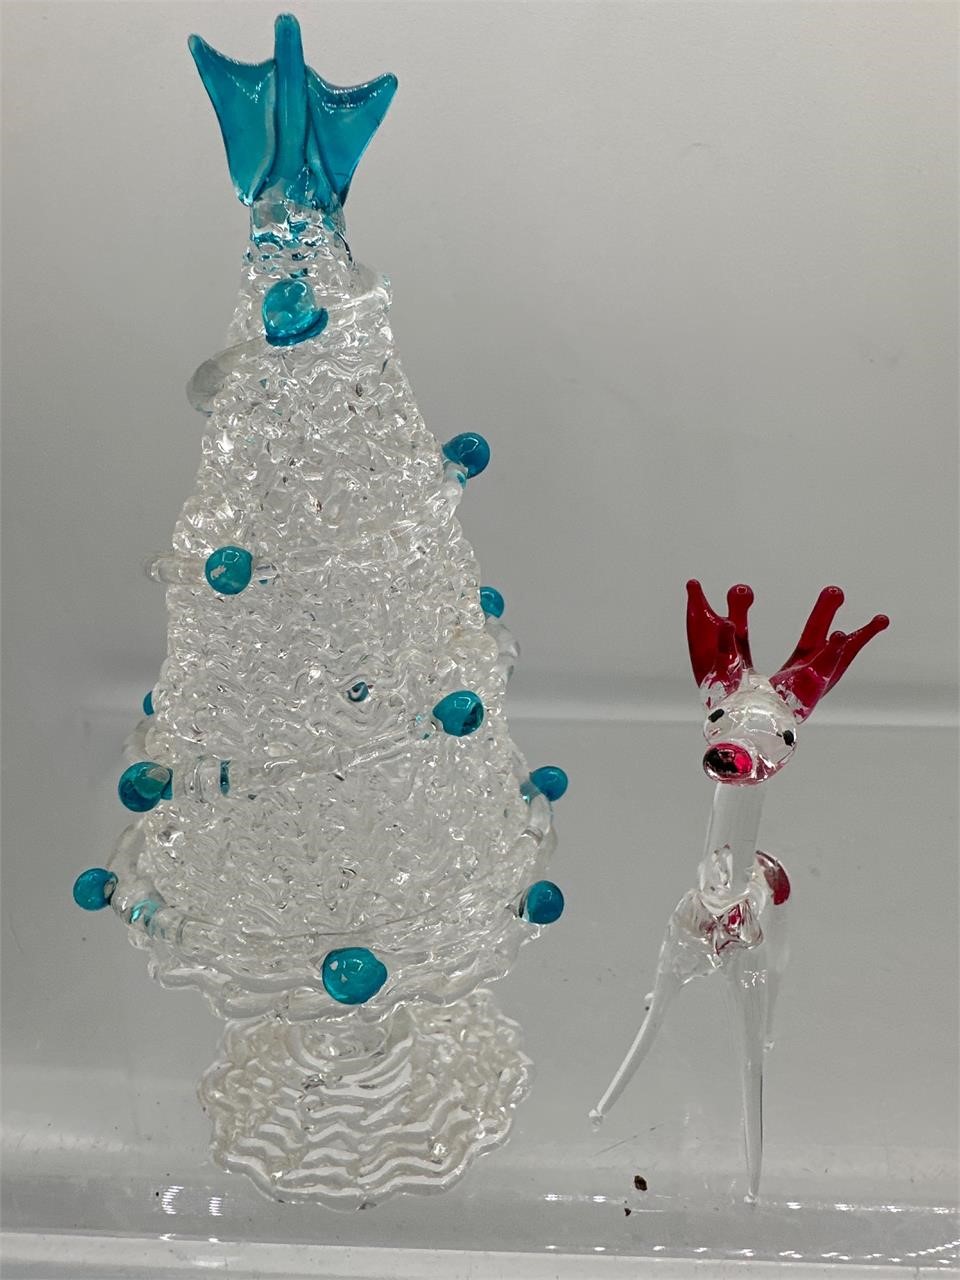 Spun glass Christmas tree and reindeer